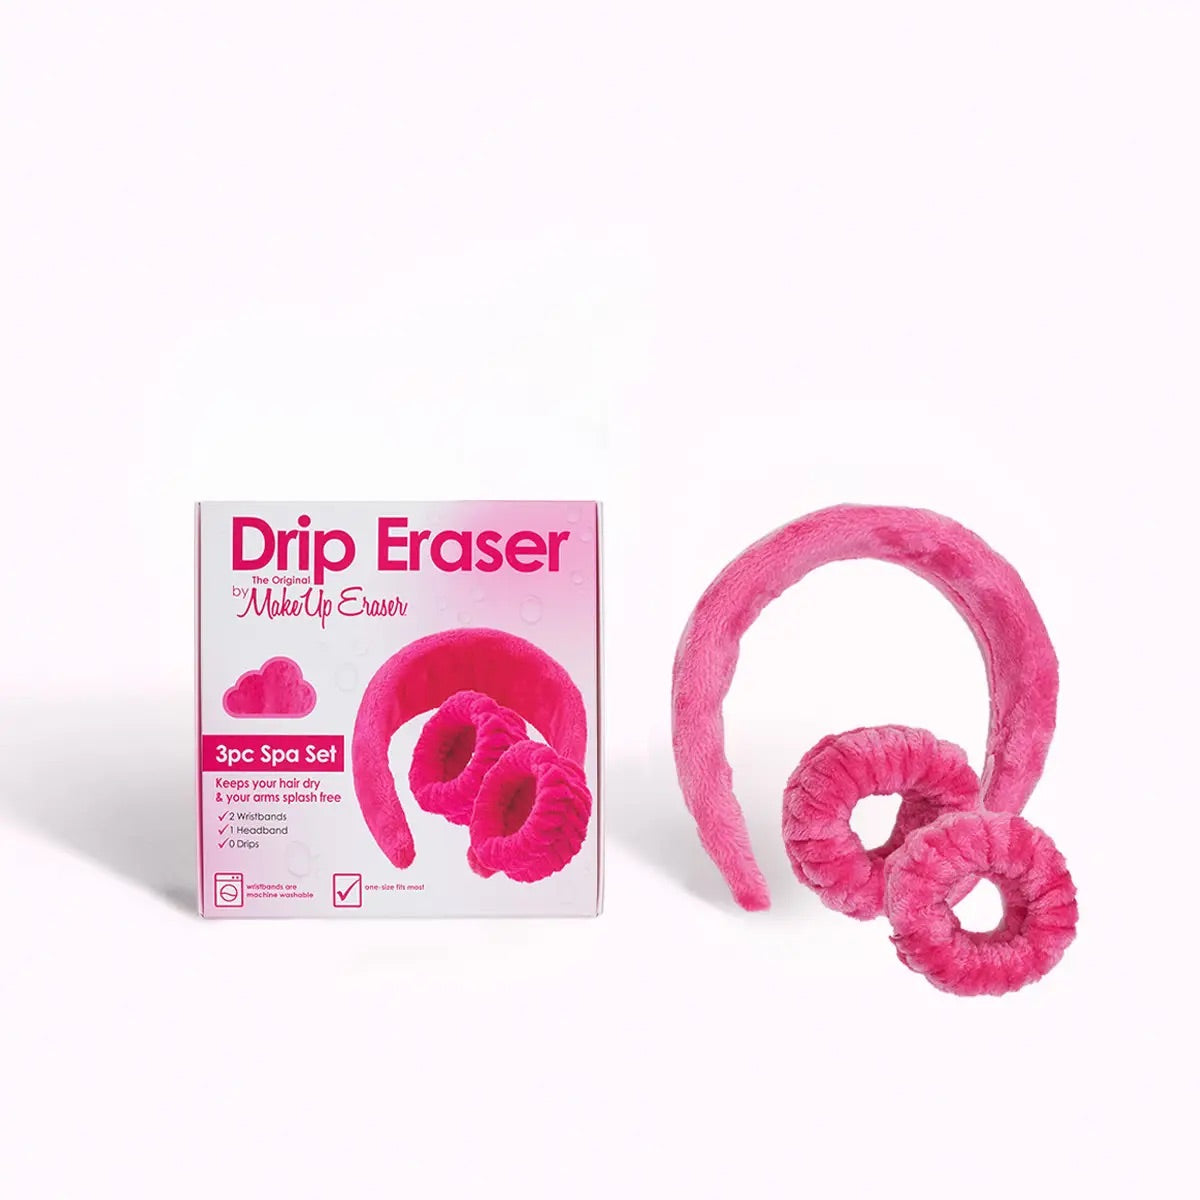 Drip Eraser 3pc Spa Set